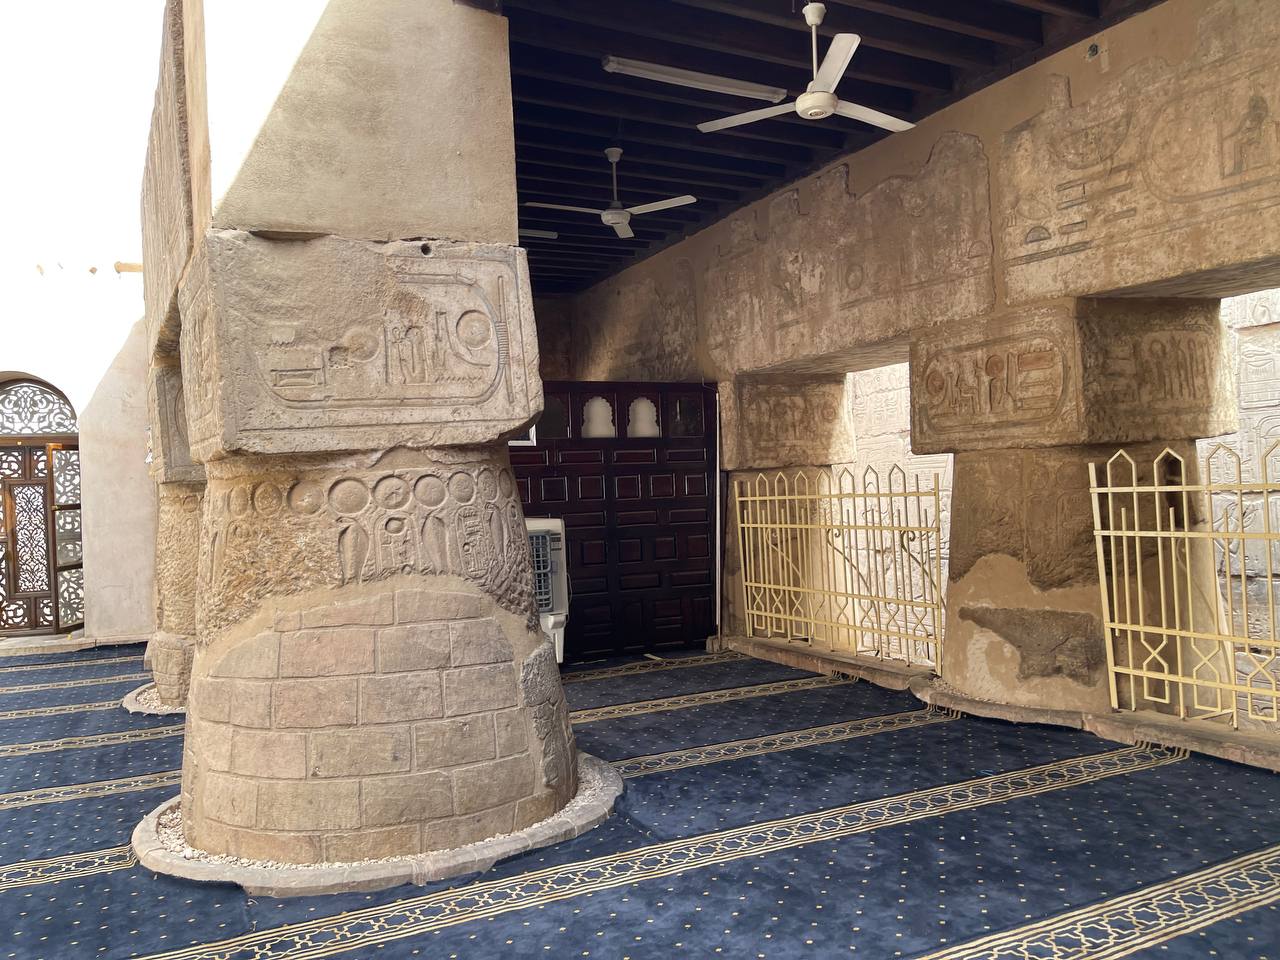 مسجد وضريح تاريخي على أطلال معبد فرعونى بالأقصر  (3)